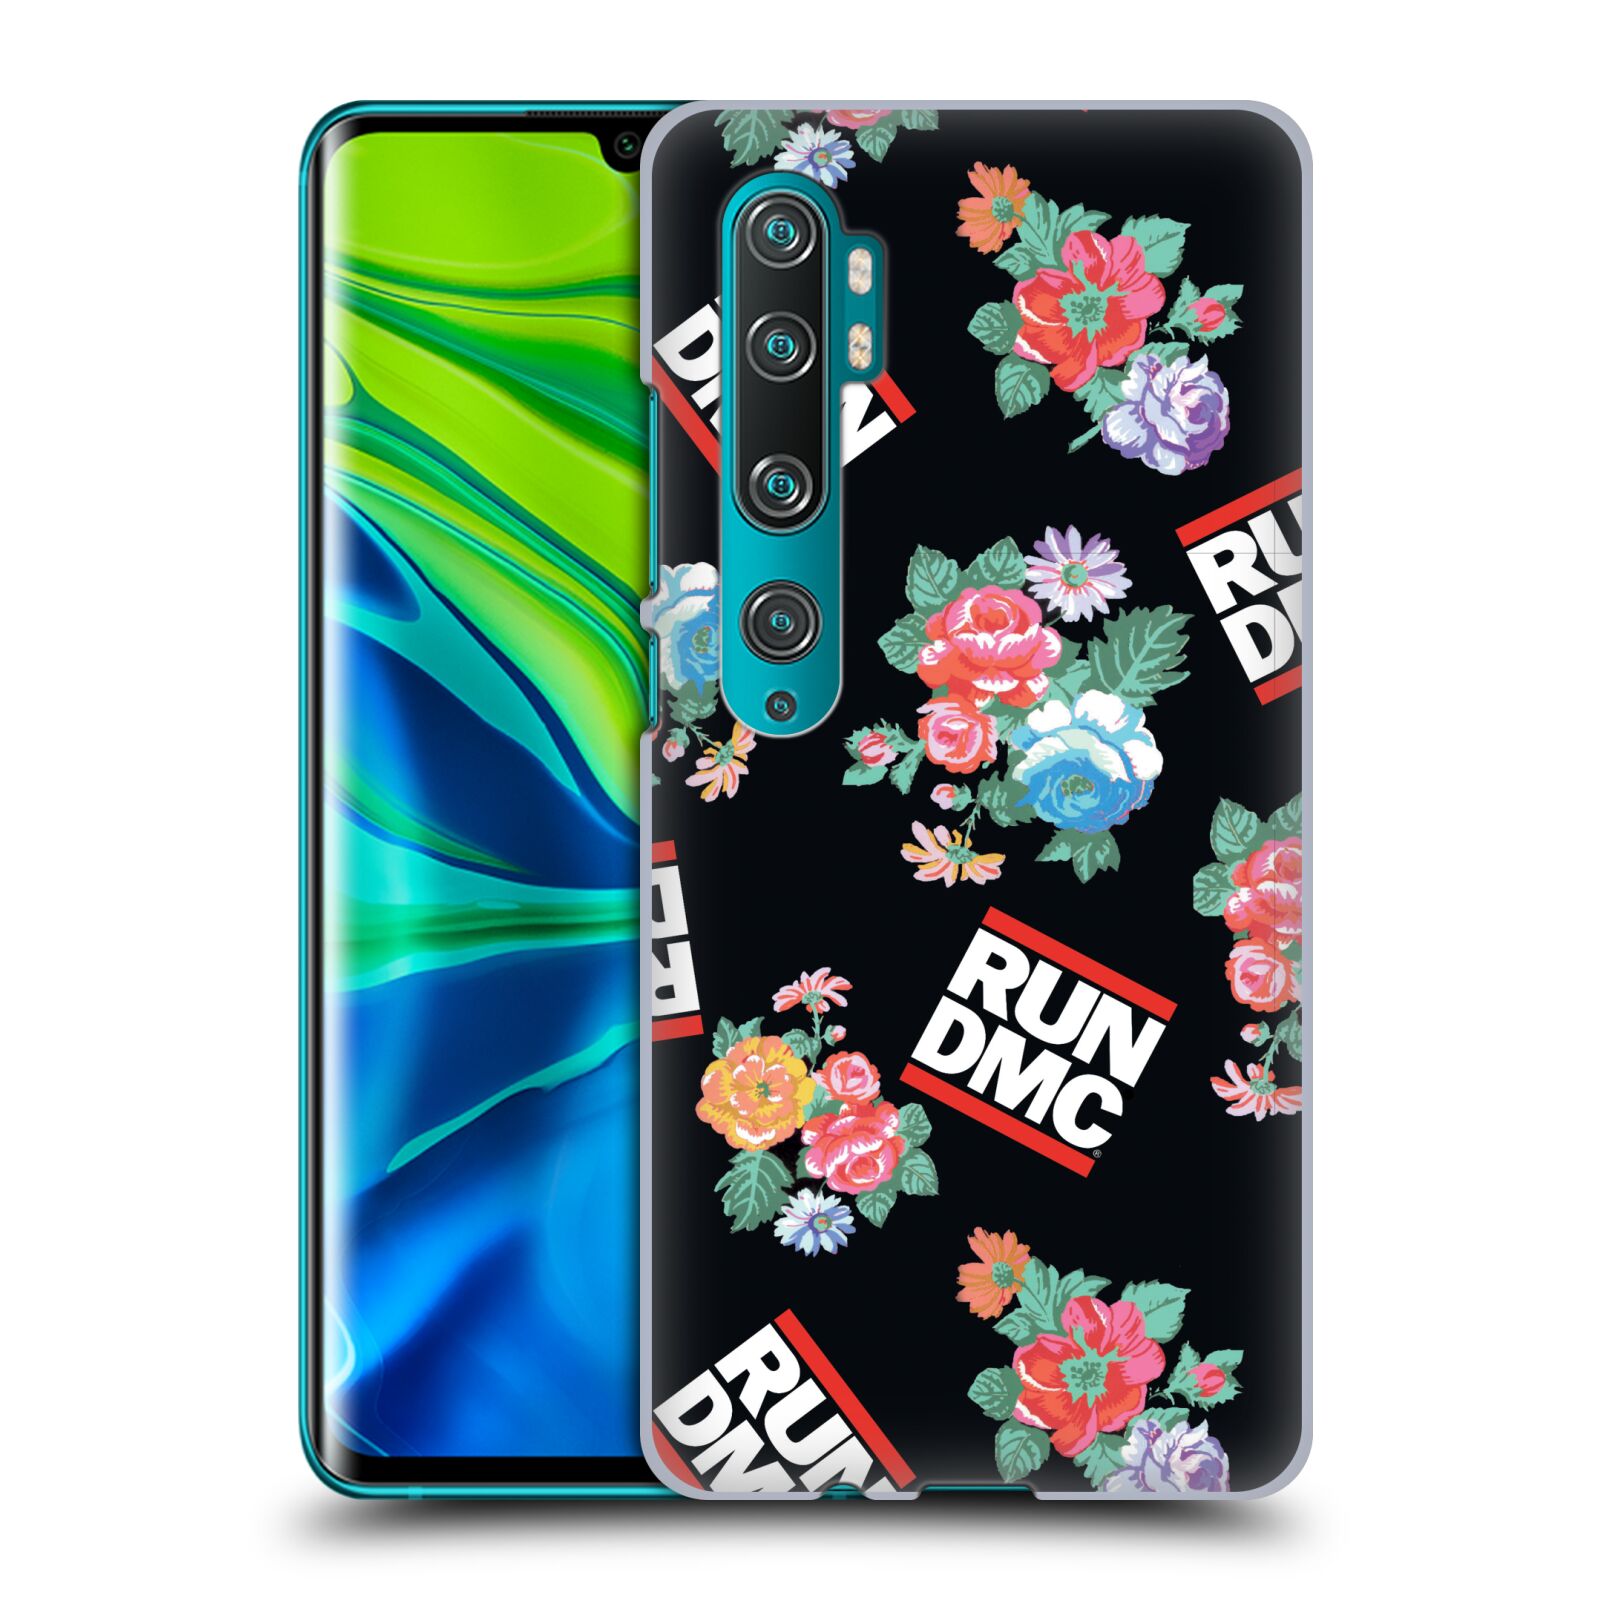 Pouzdro na mobil Xiaomi Mi Note 10 / Mi Note 10 PRO - HEAD CASE - rapová kapela Run DMC květiny černé pozadí